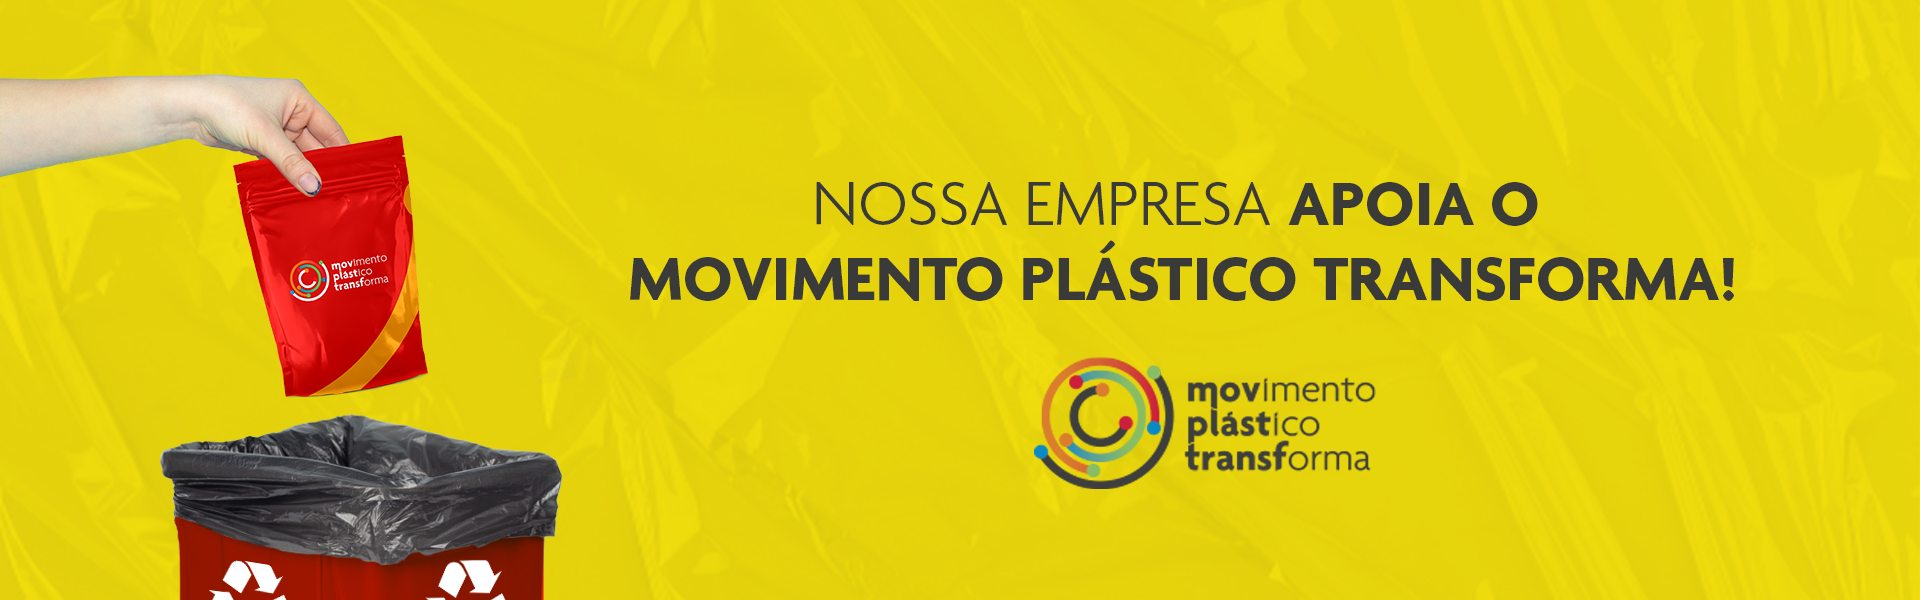 Nossa empresa apoia o movimento plástico transforma!